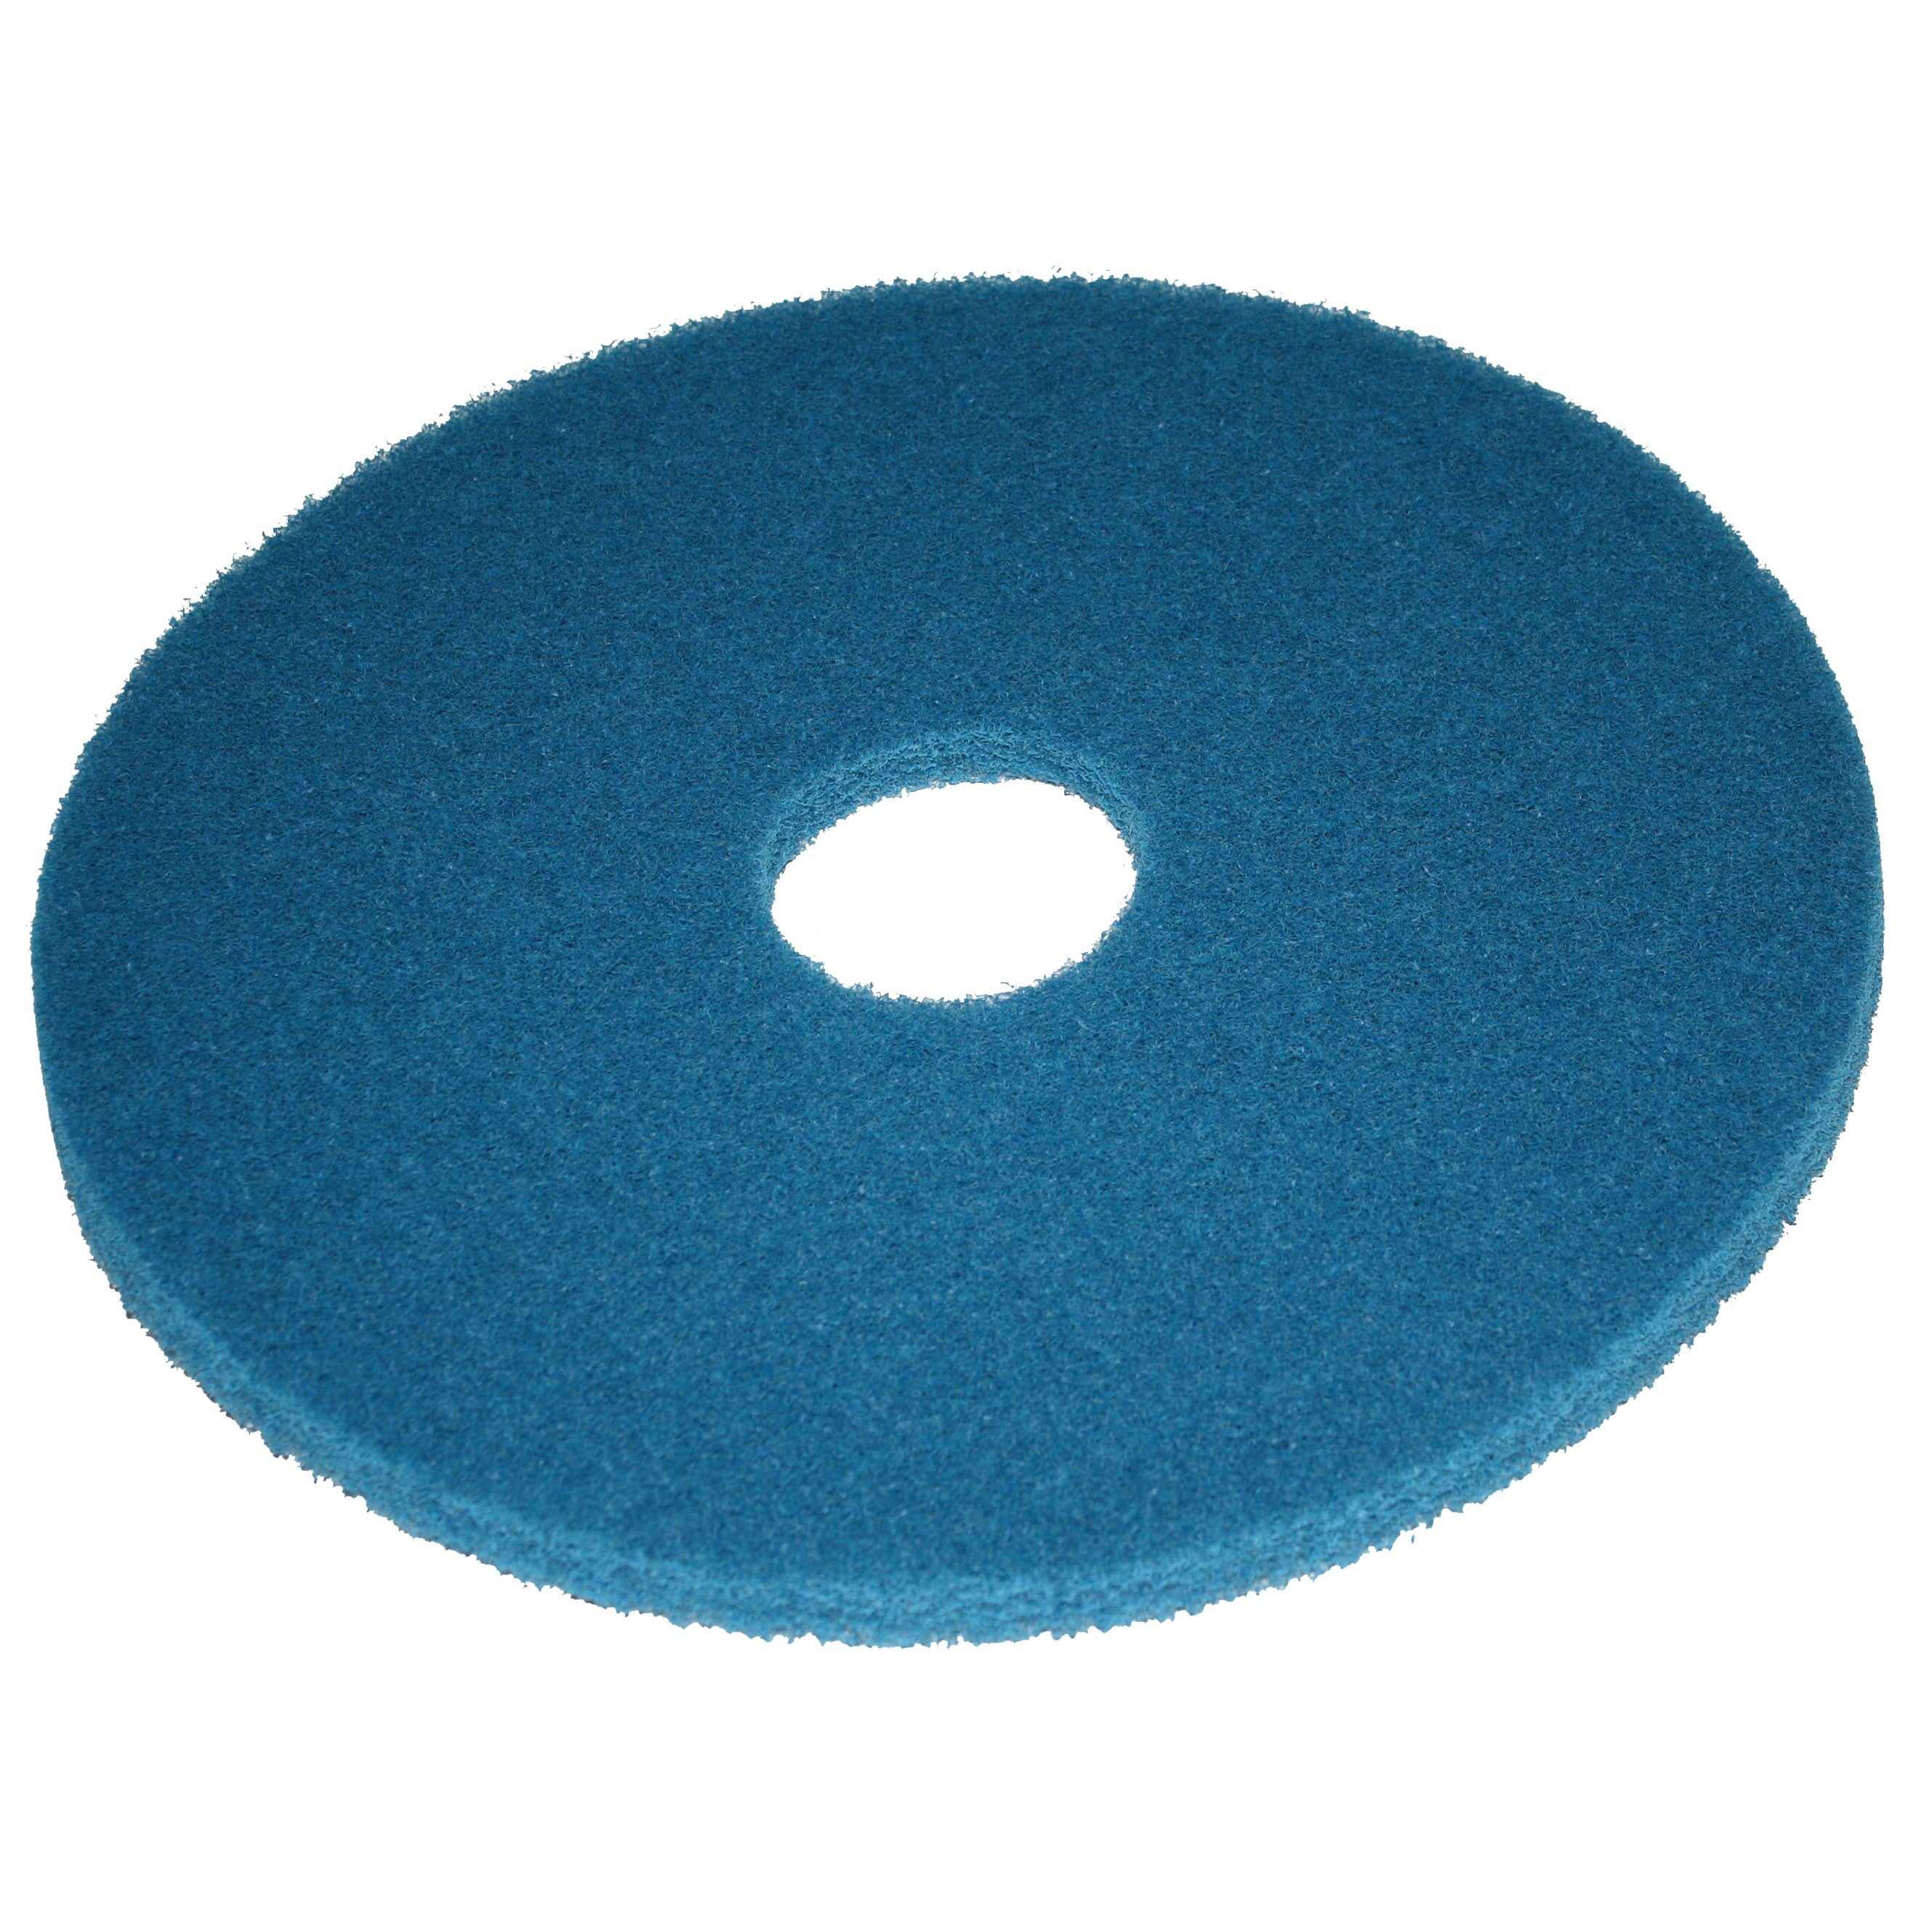 Pad bleu, Ø 381 mm, polyester